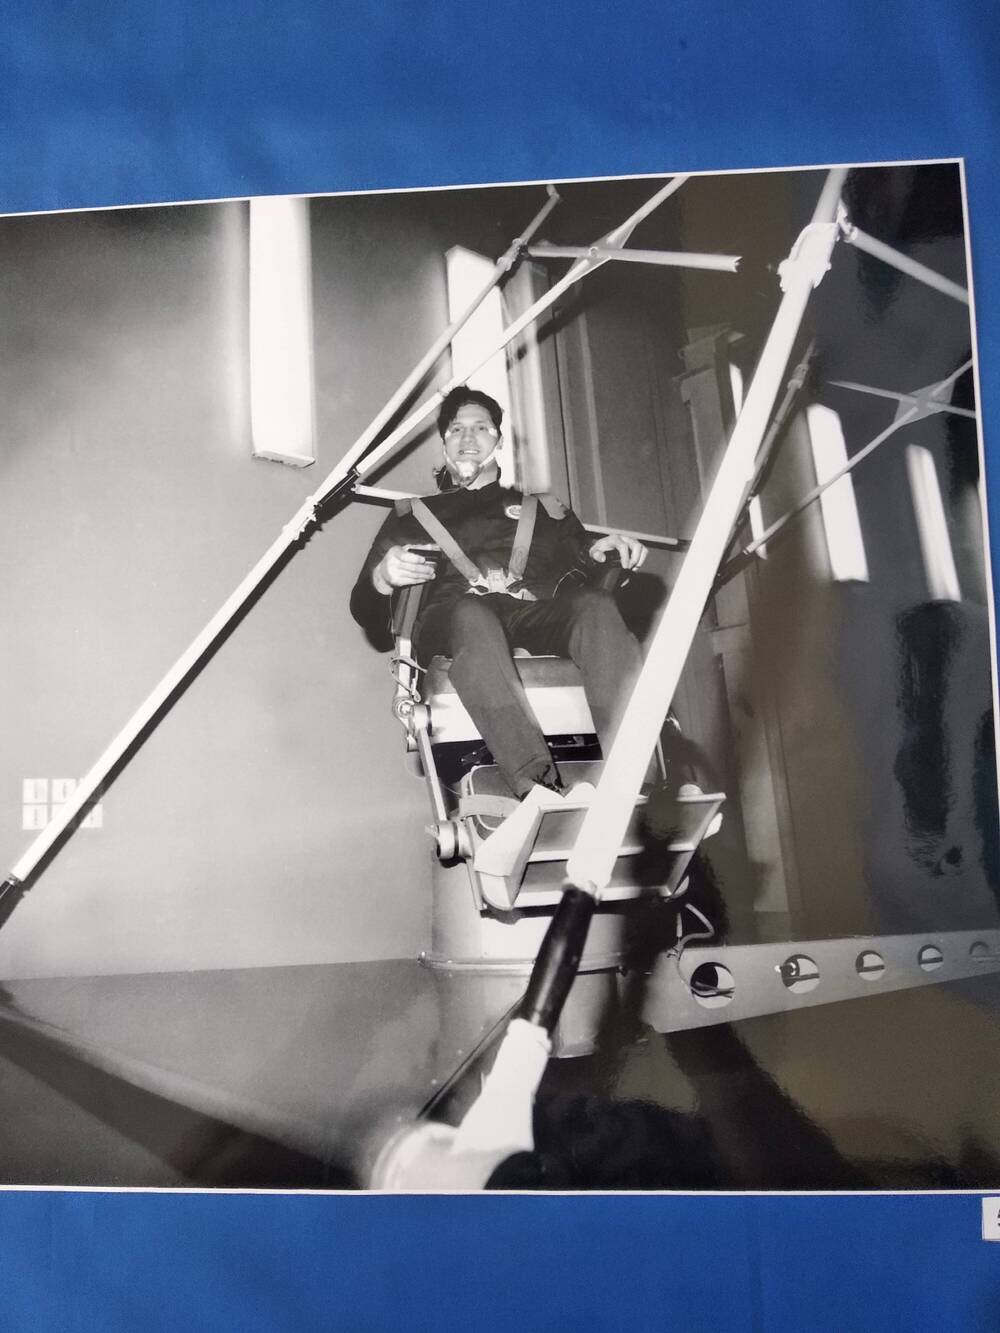 Фотография сюжетная черно-белая космонавта Б. Волынова на тренажере.